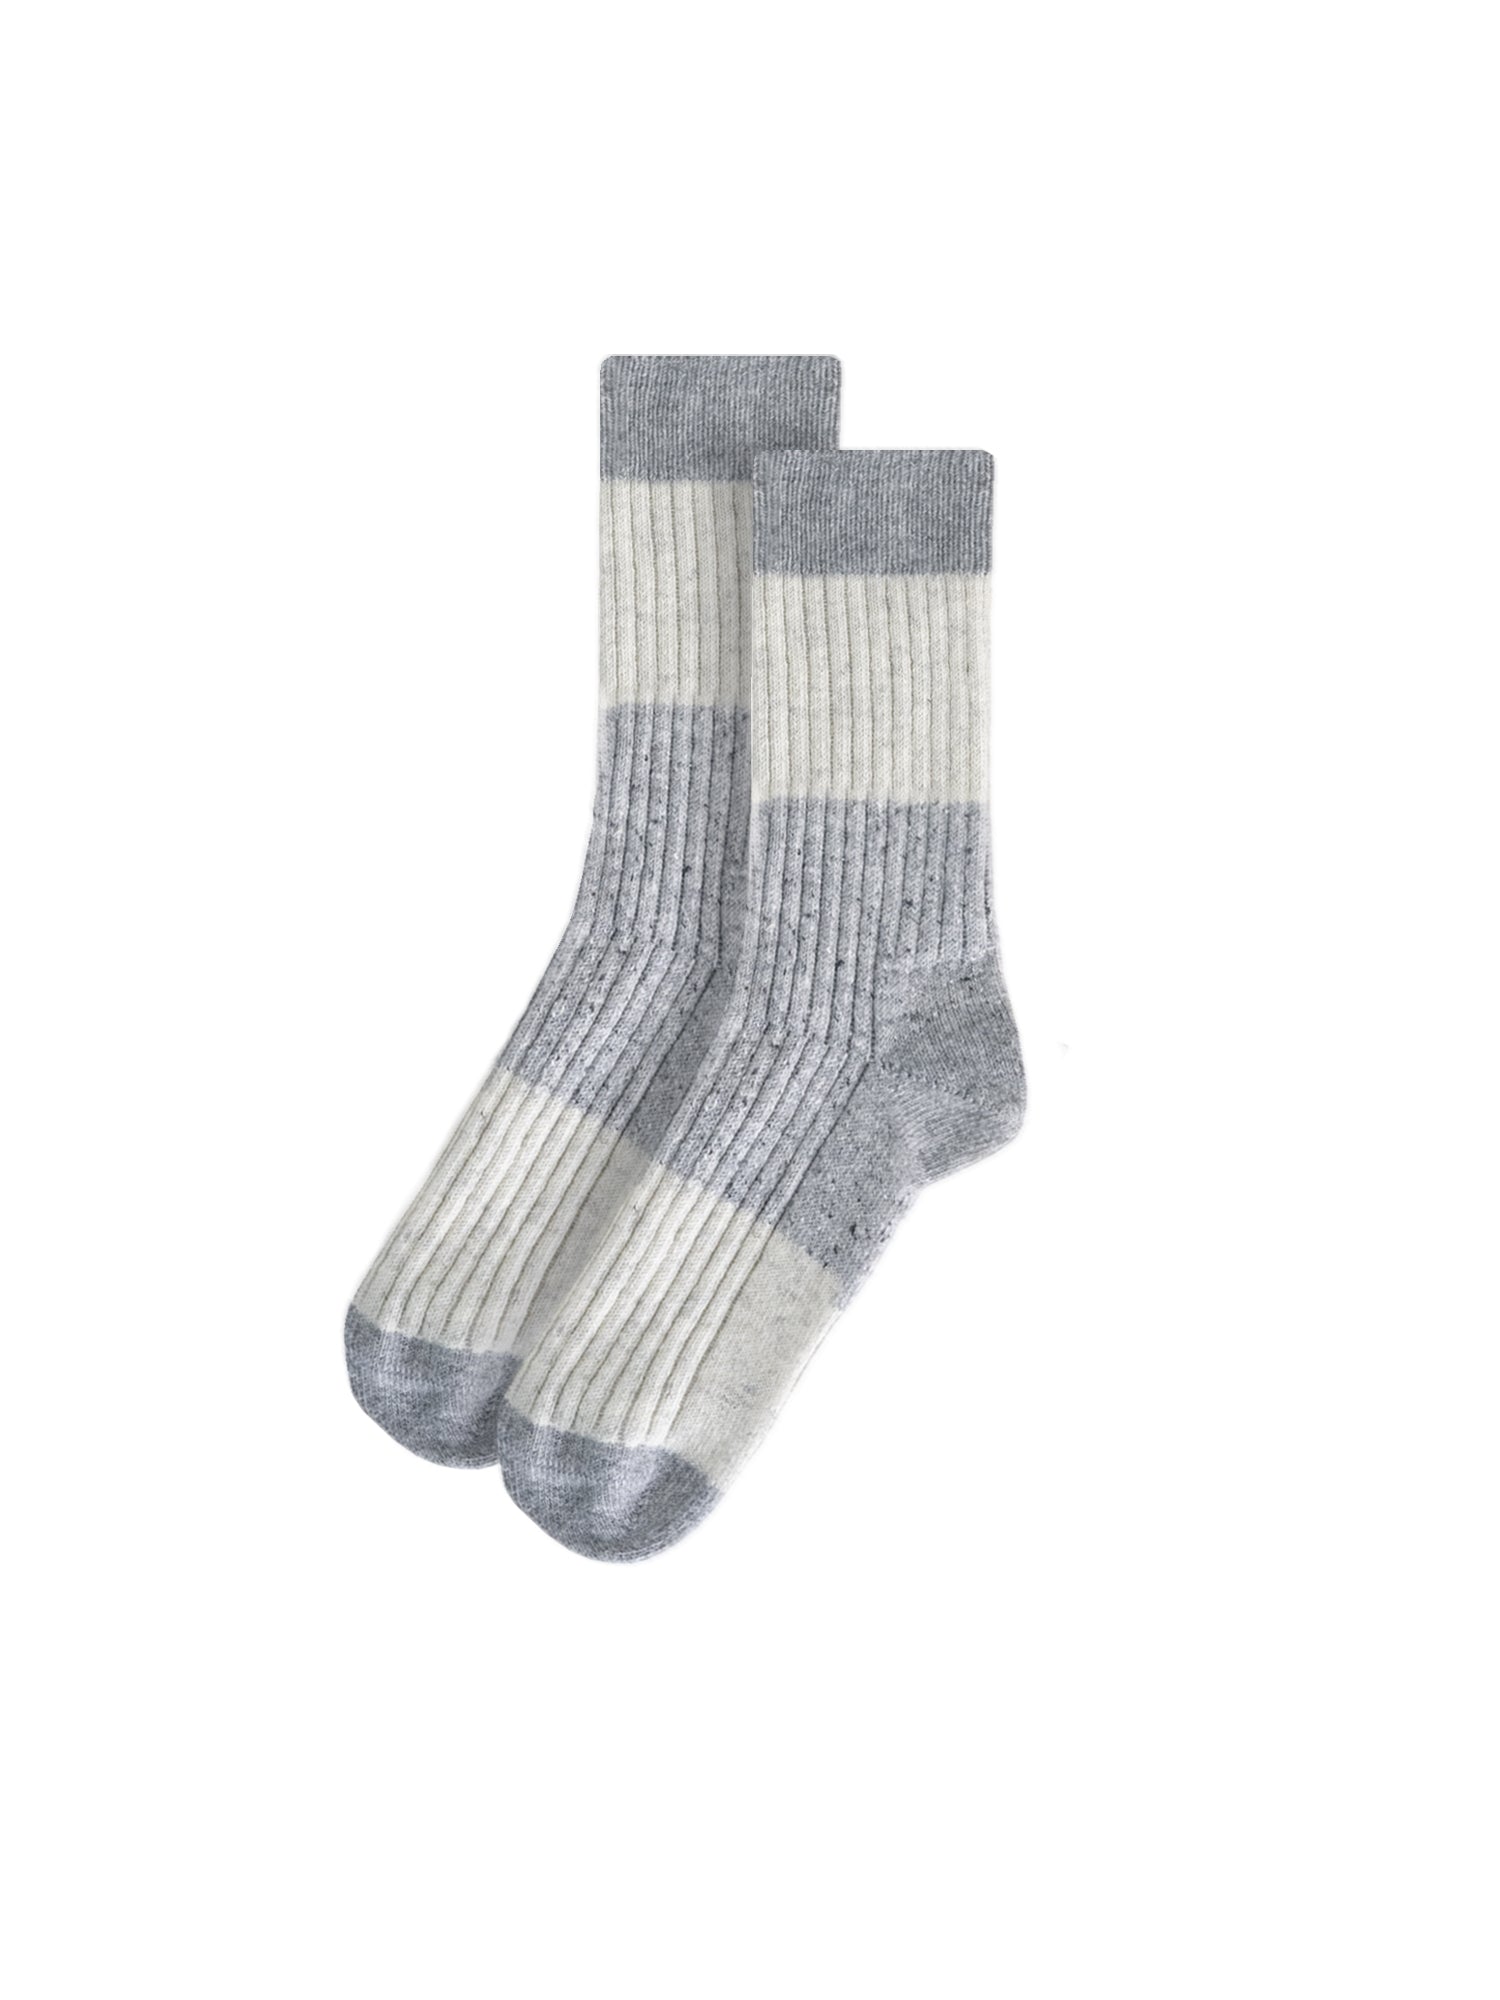 Nachhaltige Socken in grau beige meliert mit kleinen dezenten neps aus Wolle und Alpakawolle